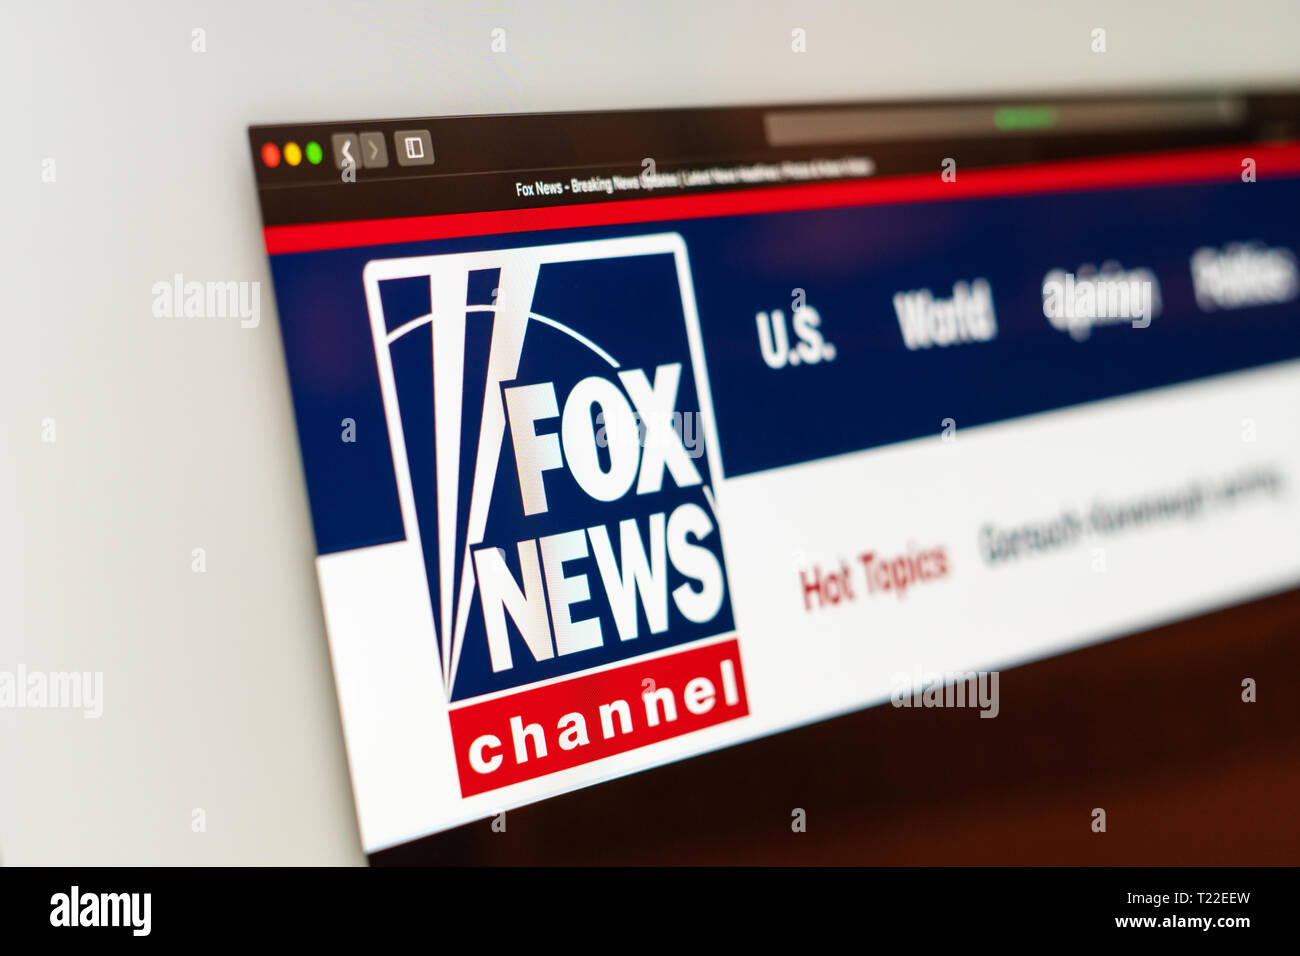 Fox News Homepage. Nahaufnahme von Fox News Channel Logo. Сan als Illustration für andere Medien verwendet werden. Stockfoto